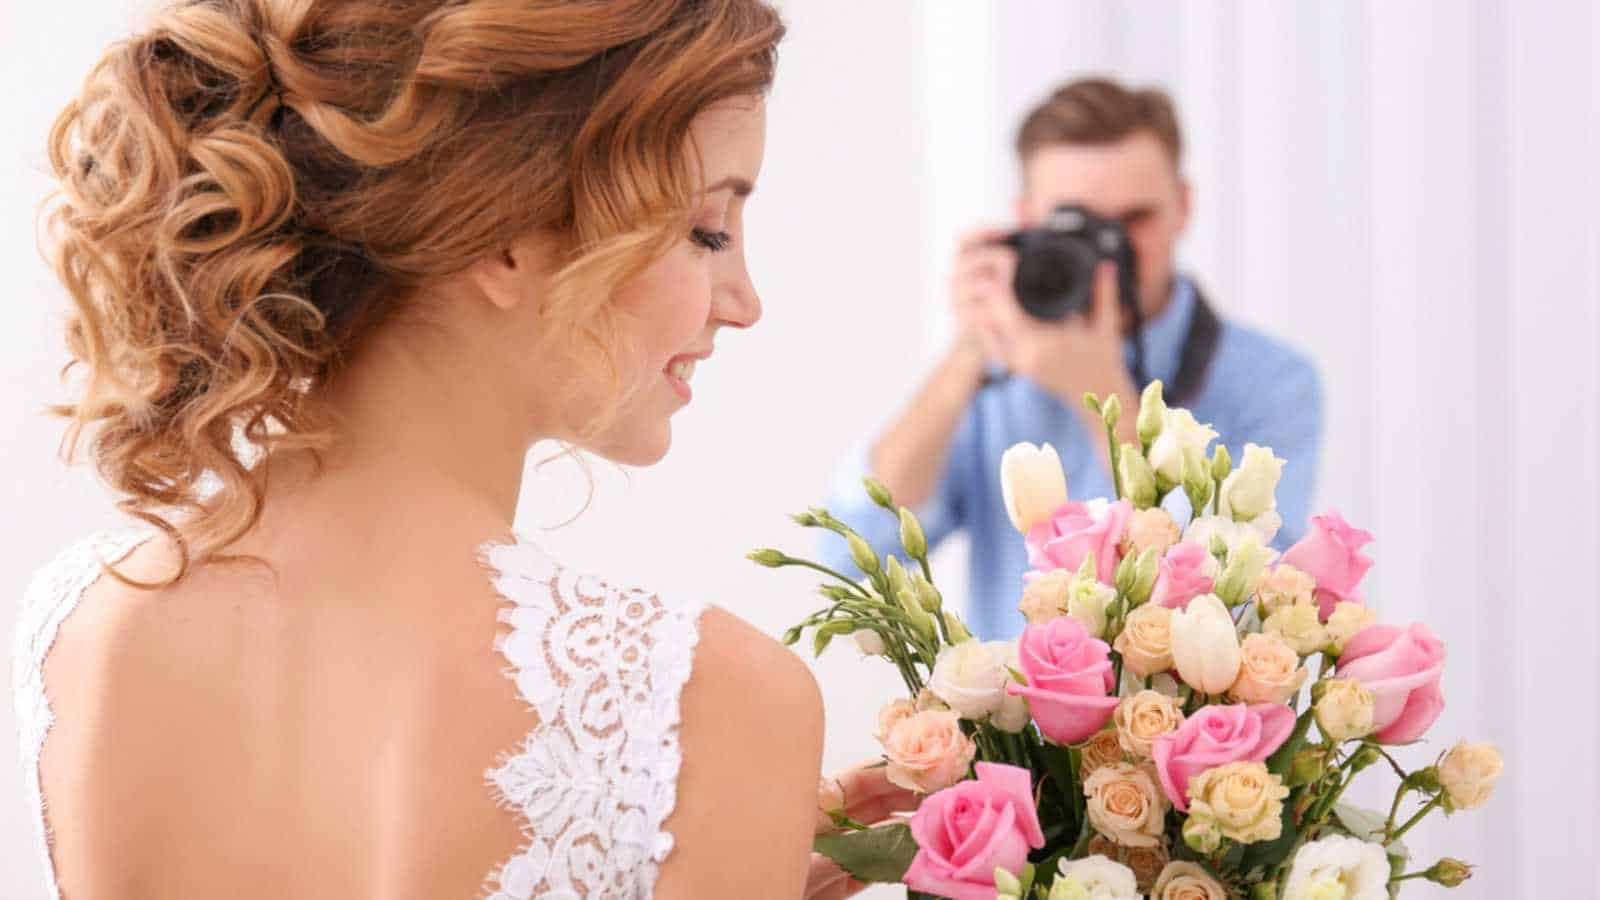 Man taking photo of bride